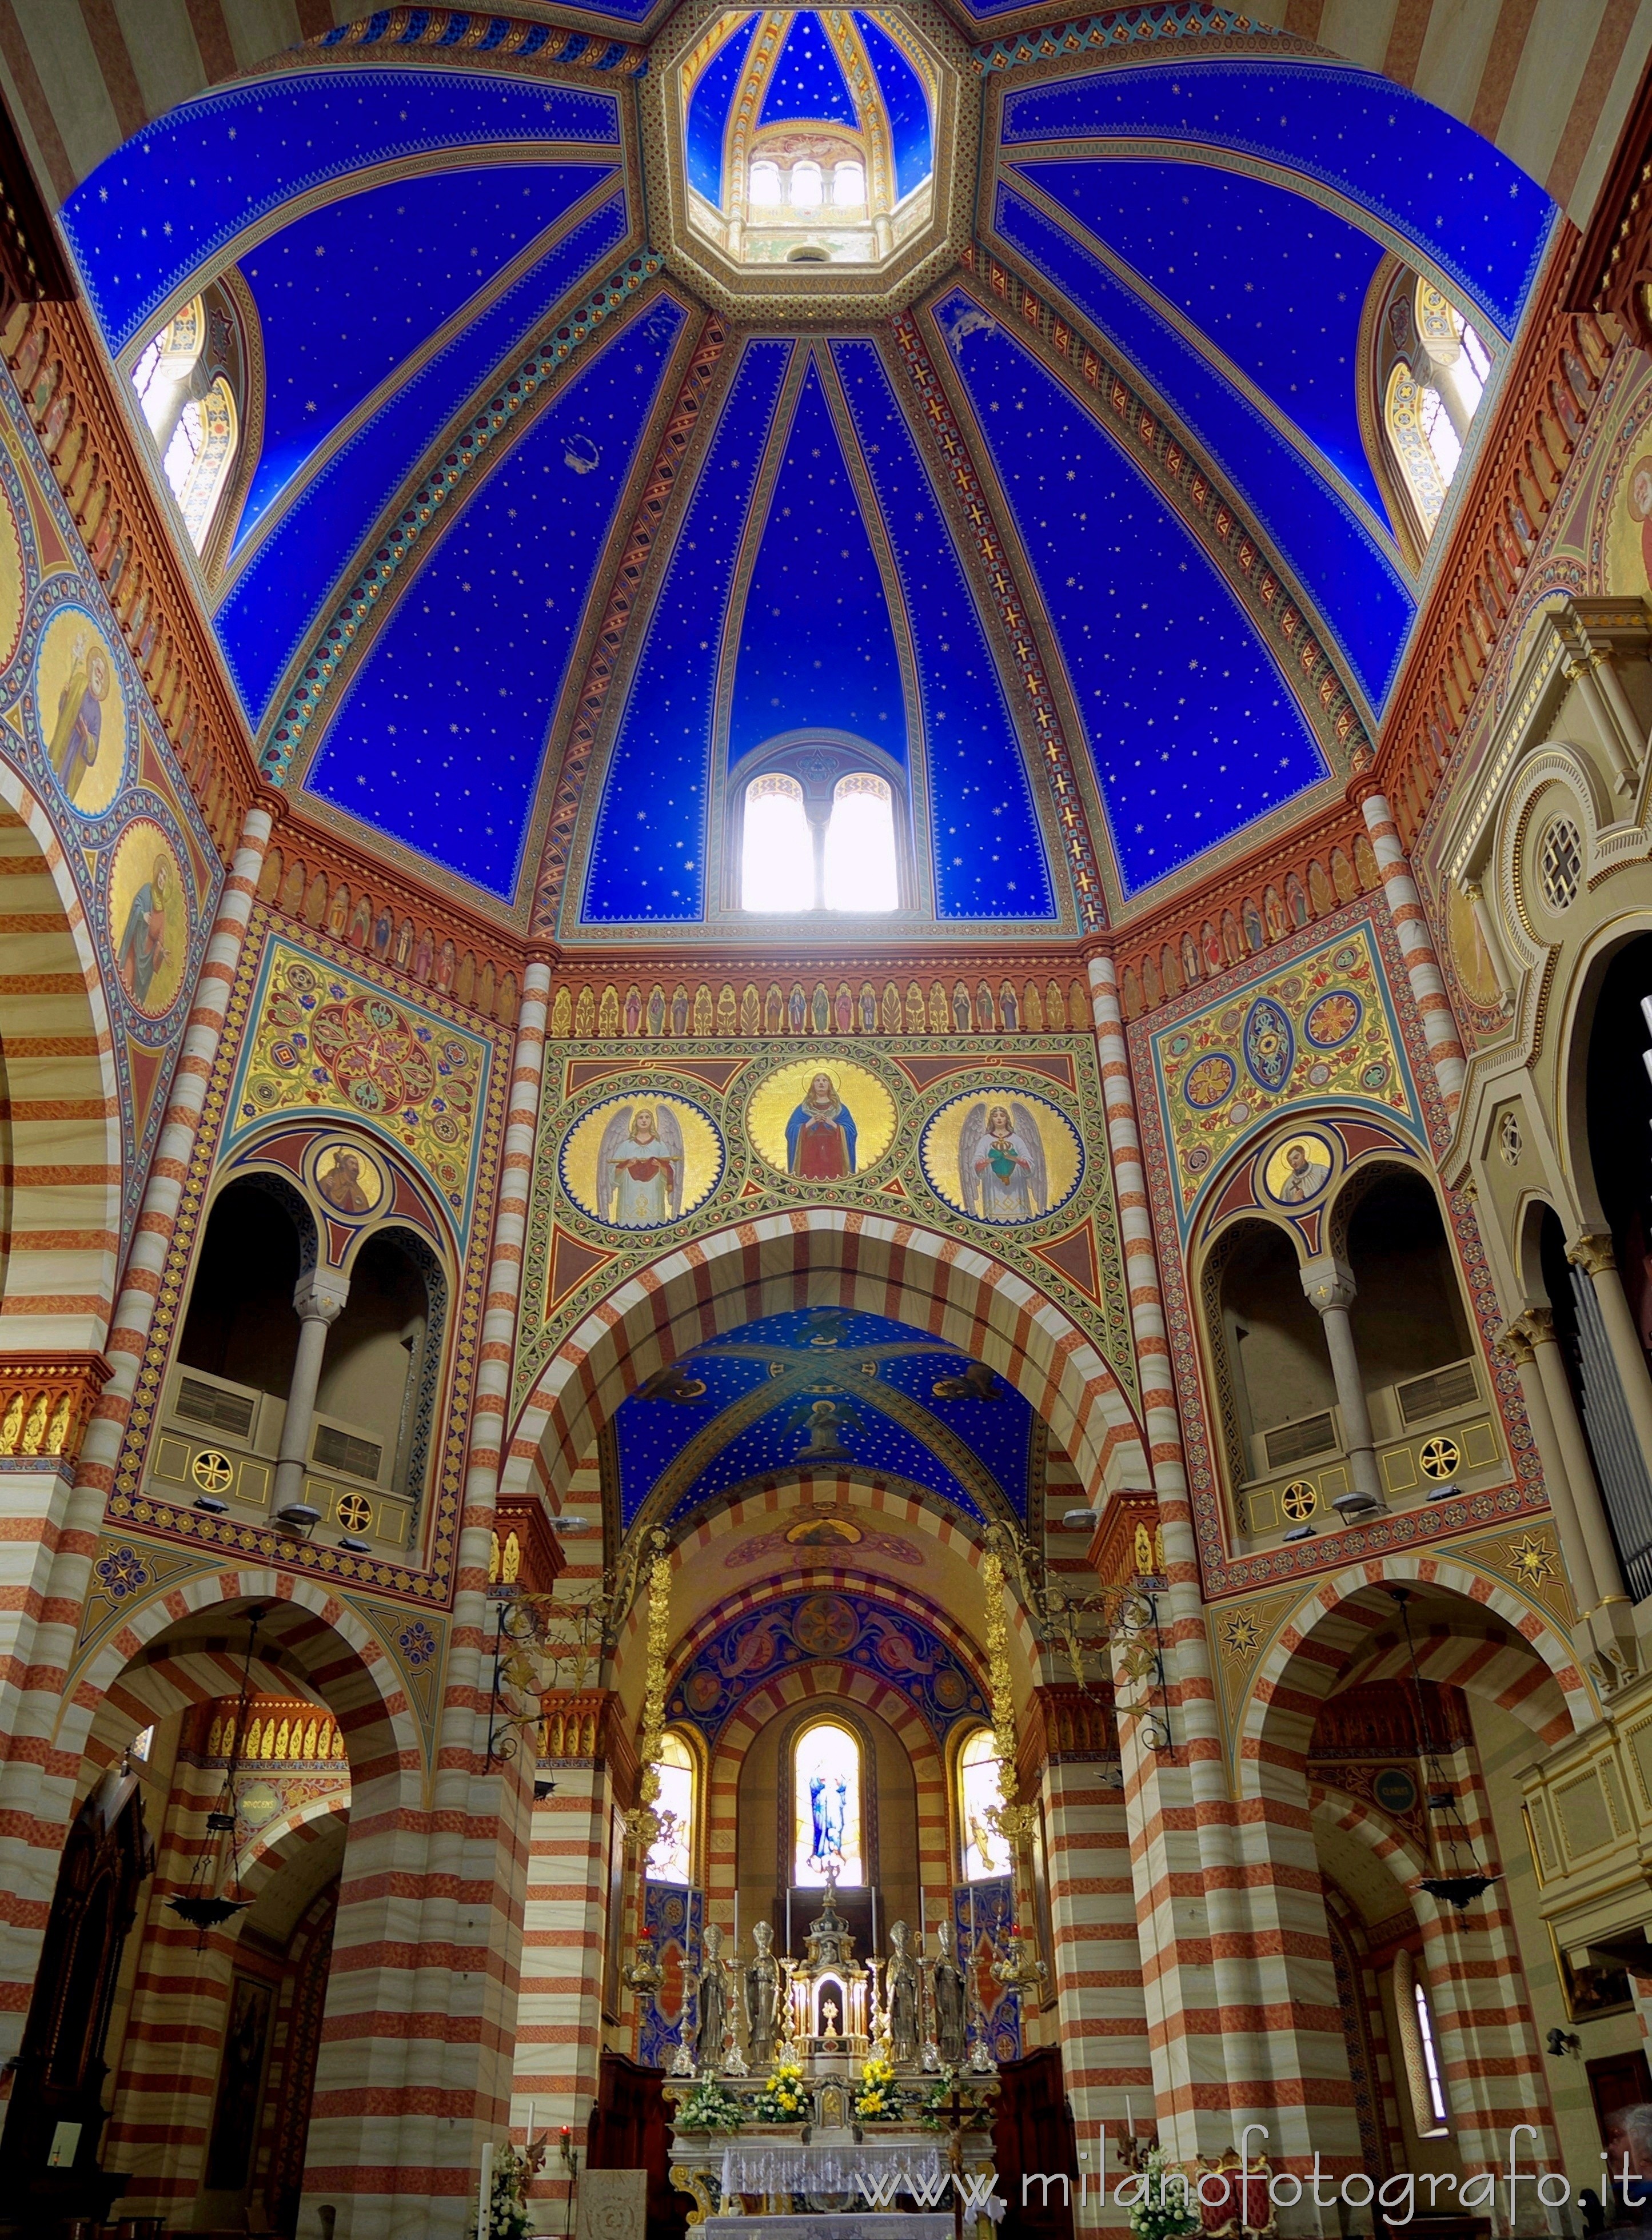 Soncino (Cremona, Italy): Presbytery of the Church of Santa Maria Assunta - Soncino (Cremona, Italy)